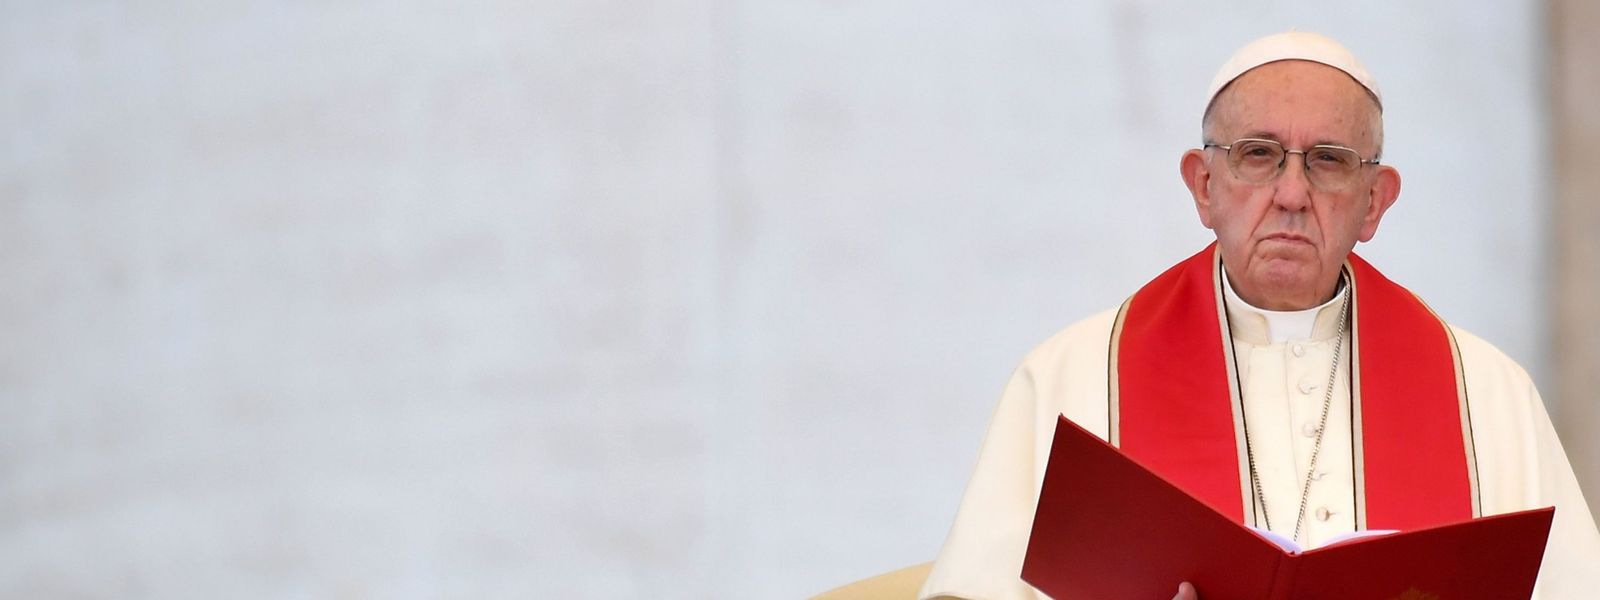 Papst Franziskus hat die Haltung der katholischen Kirche zur Todesstrafe verschärft.